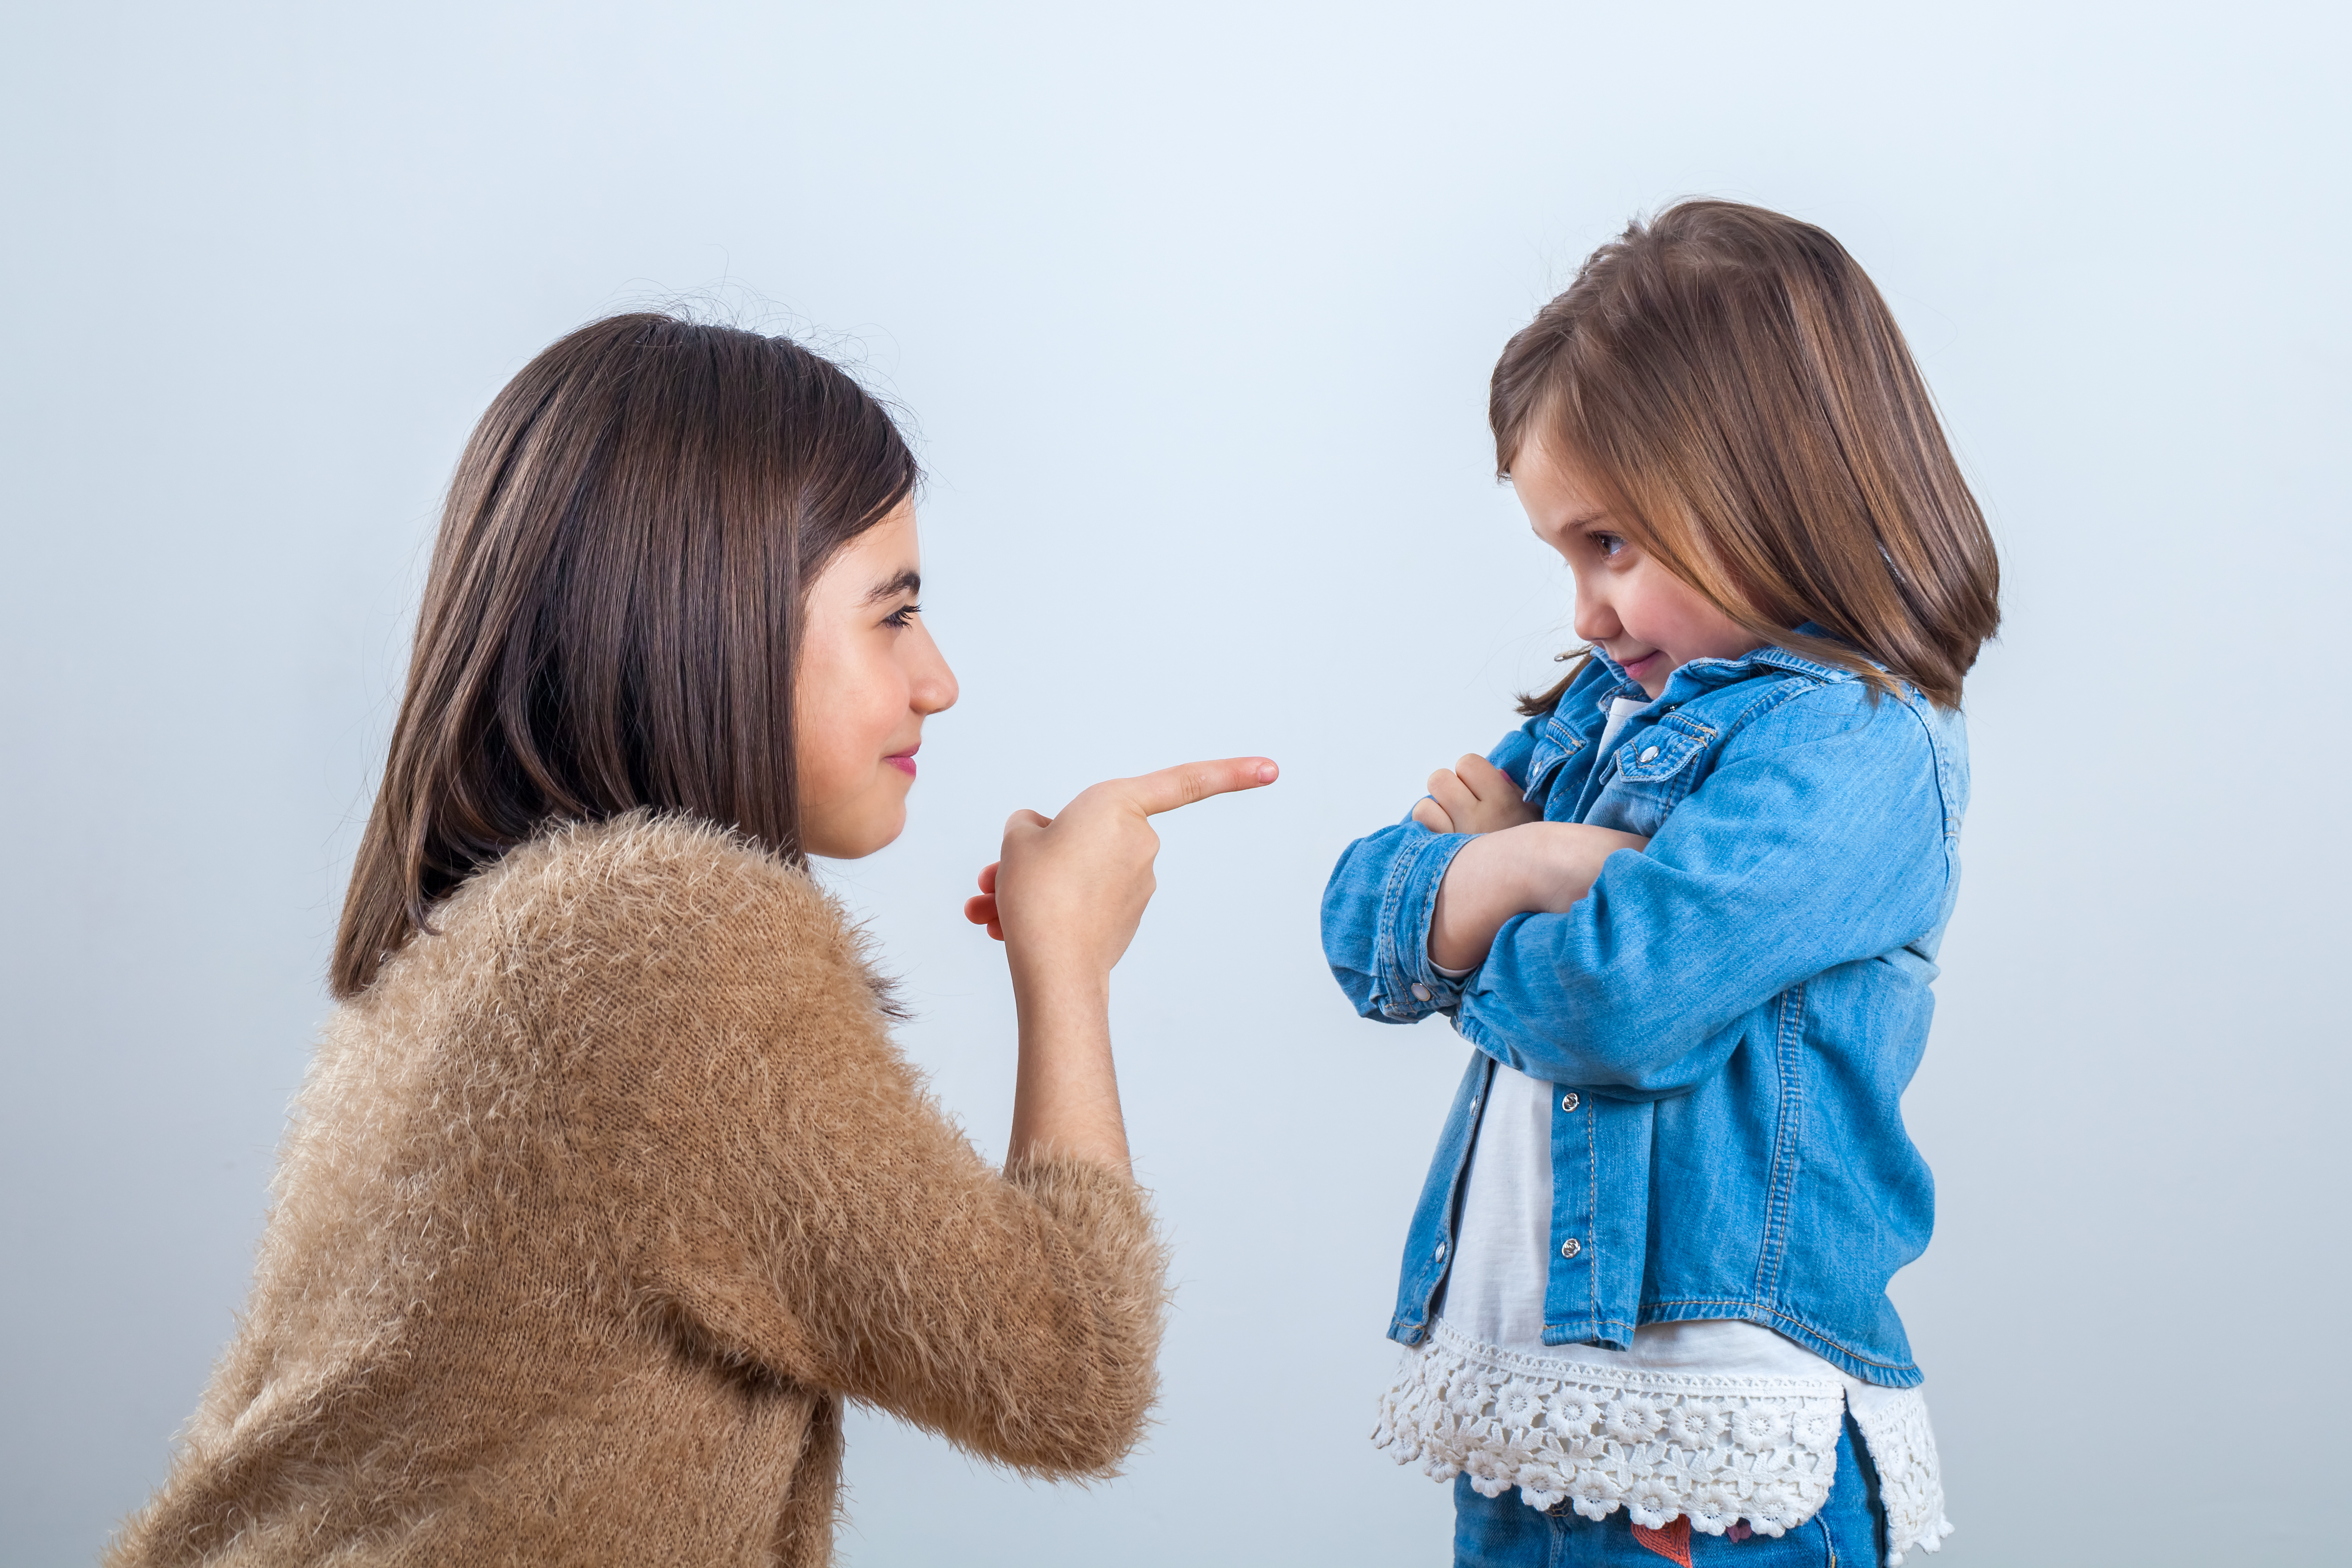 La sœur aînée fait une remarque à la plus jeune avec un doigt | Source : Getty Images